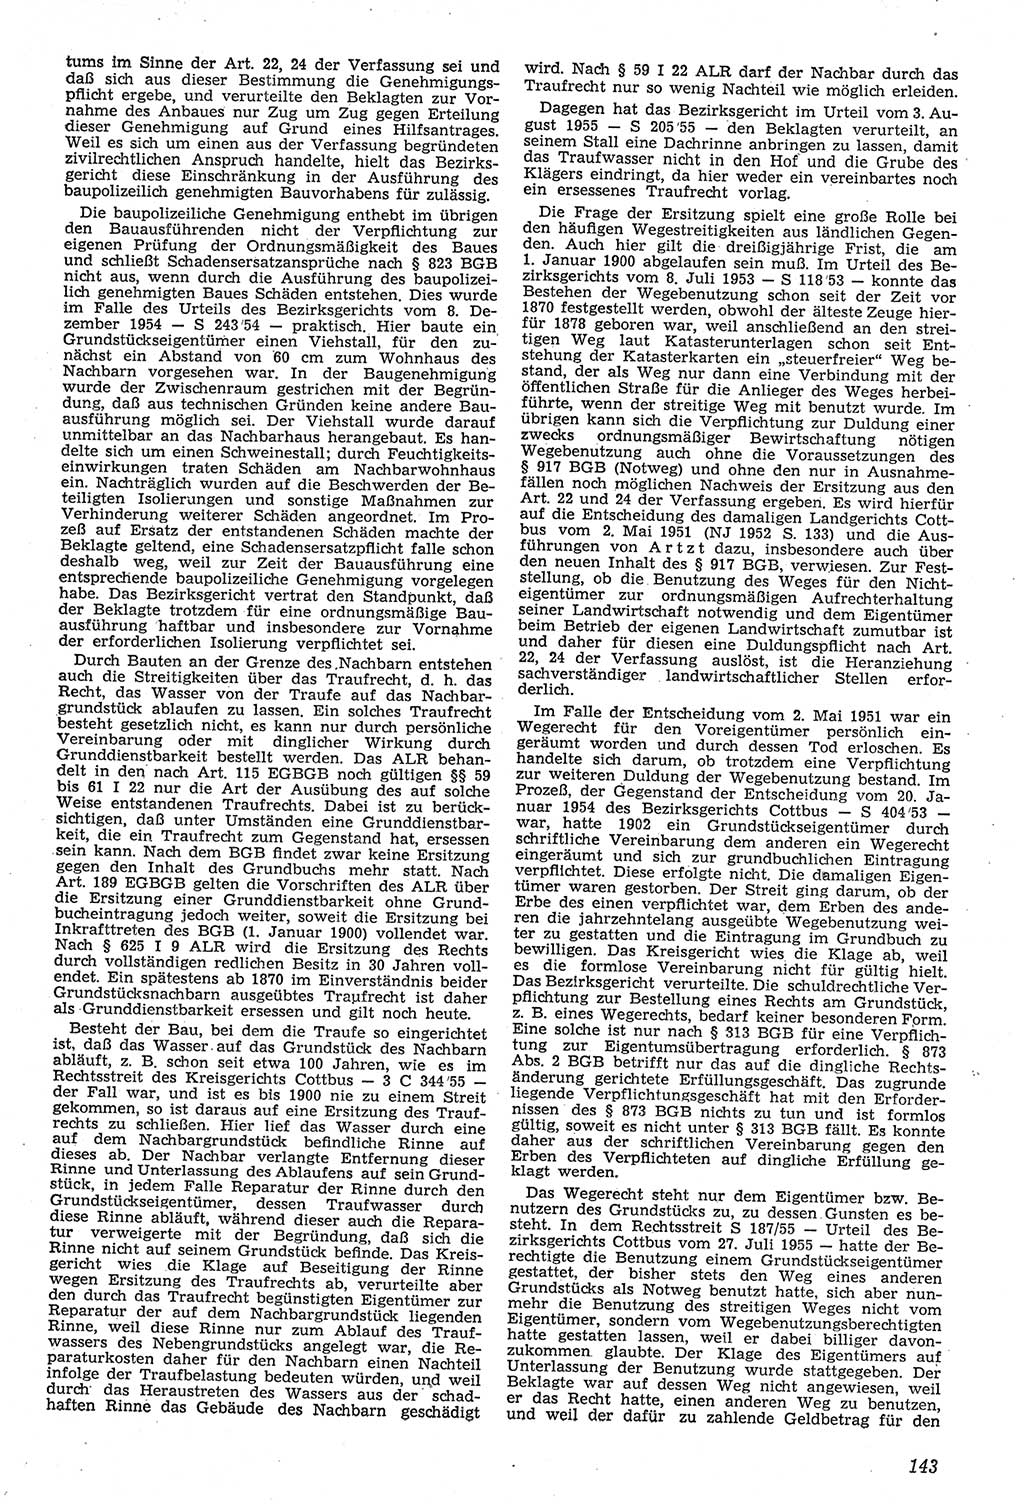 Neue Justiz (NJ), Zeitschrift für Recht und Rechtswissenschaft [Deutsche Demokratische Republik (DDR)], 11. Jahrgang 1957, Seite 143 (NJ DDR 1957, S. 143)